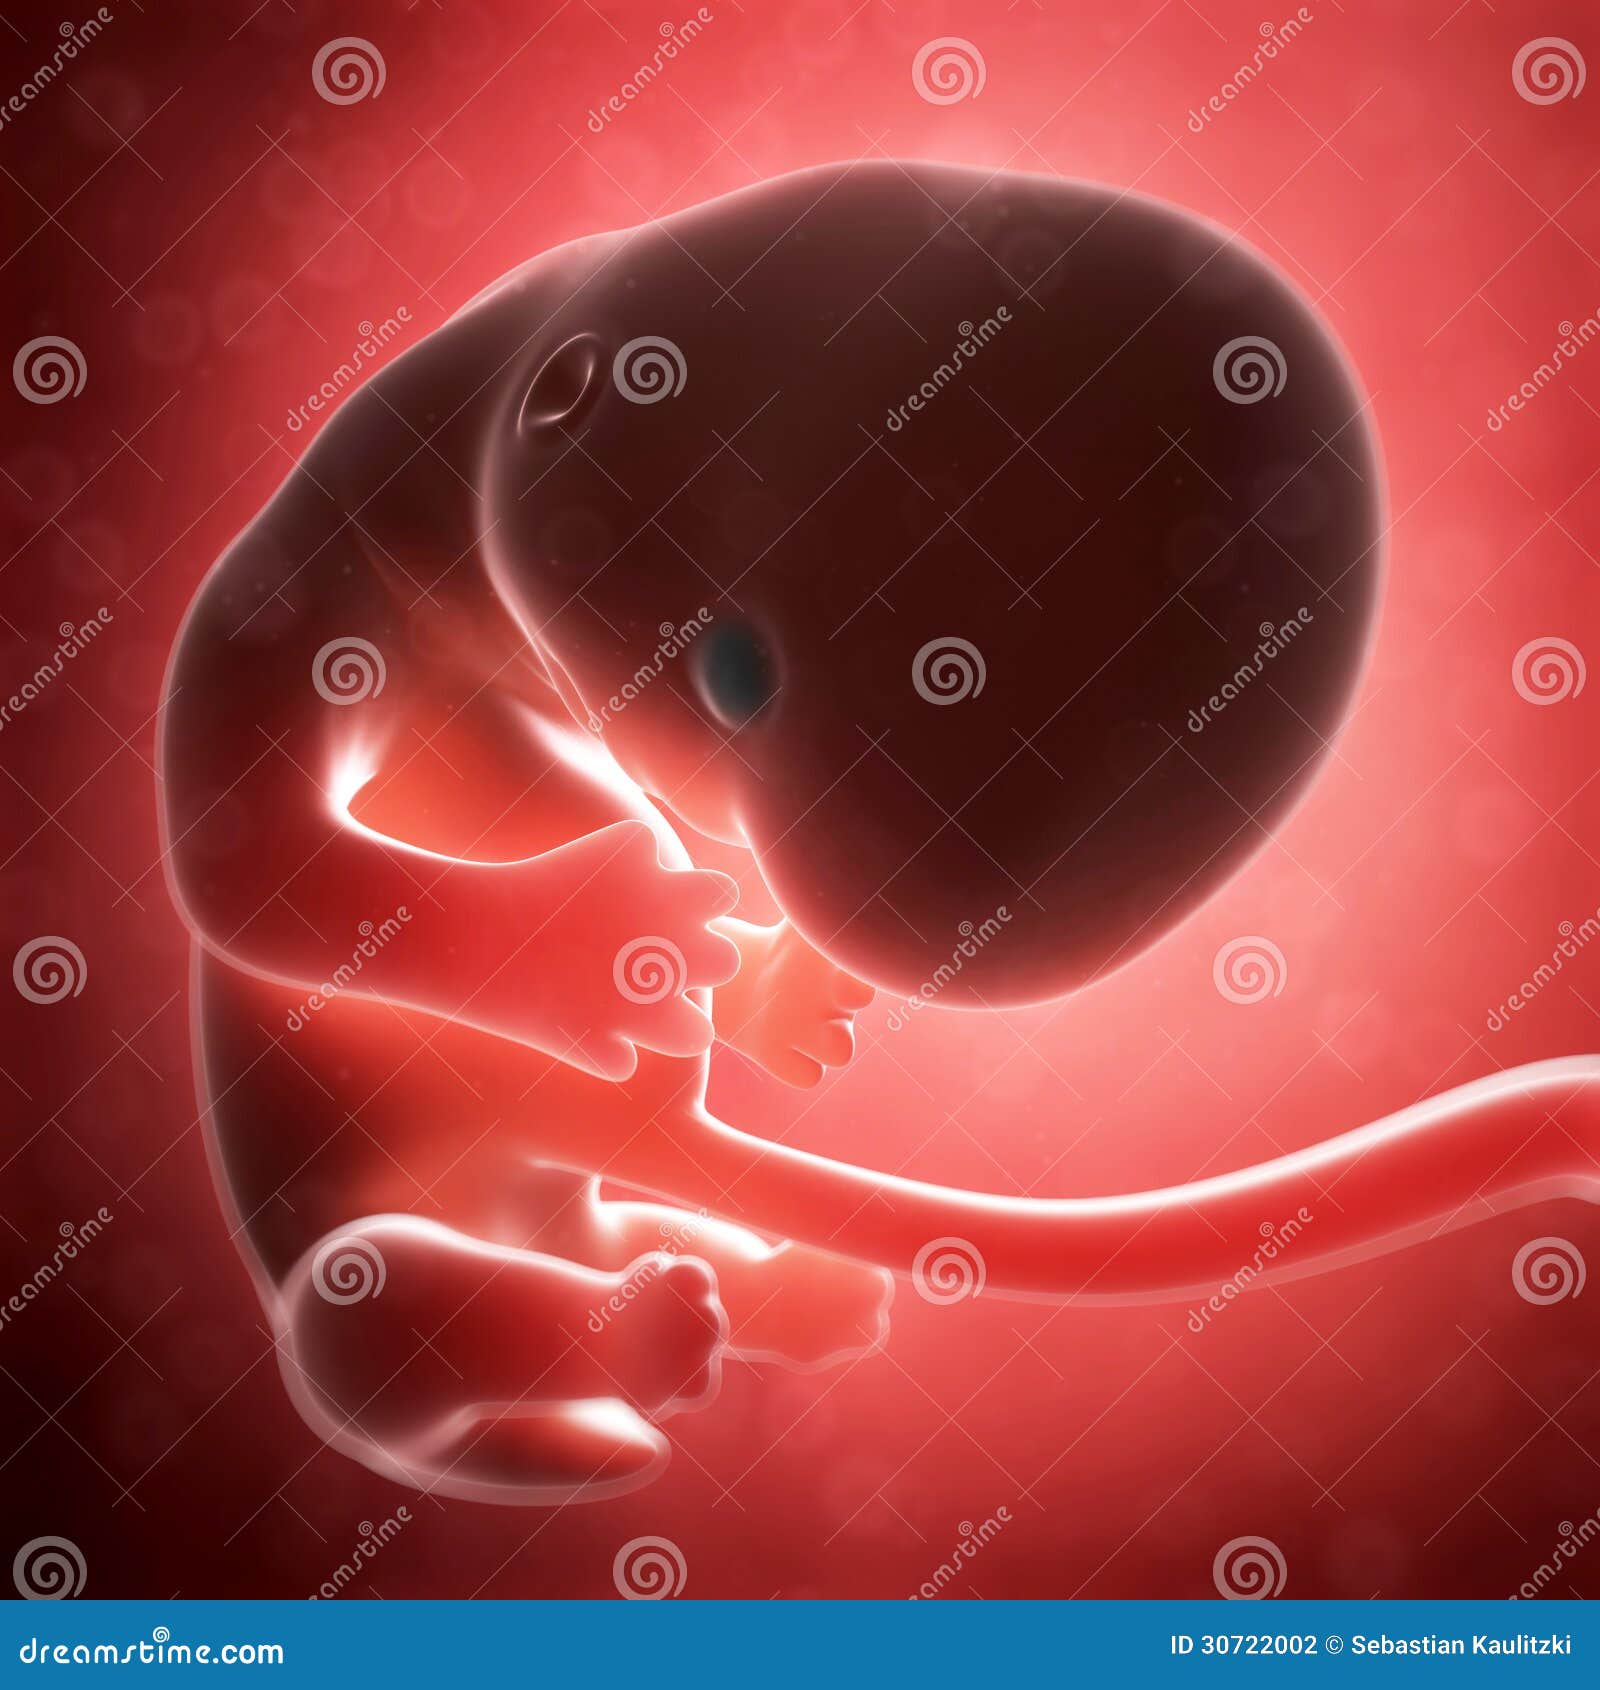 6 неделя что происходит с малышом. Эмбрион на 8 неделе беременности. Плод на 6 акушерской неделе беременности. Эмбрион на 6 неделе беременности акушерской.